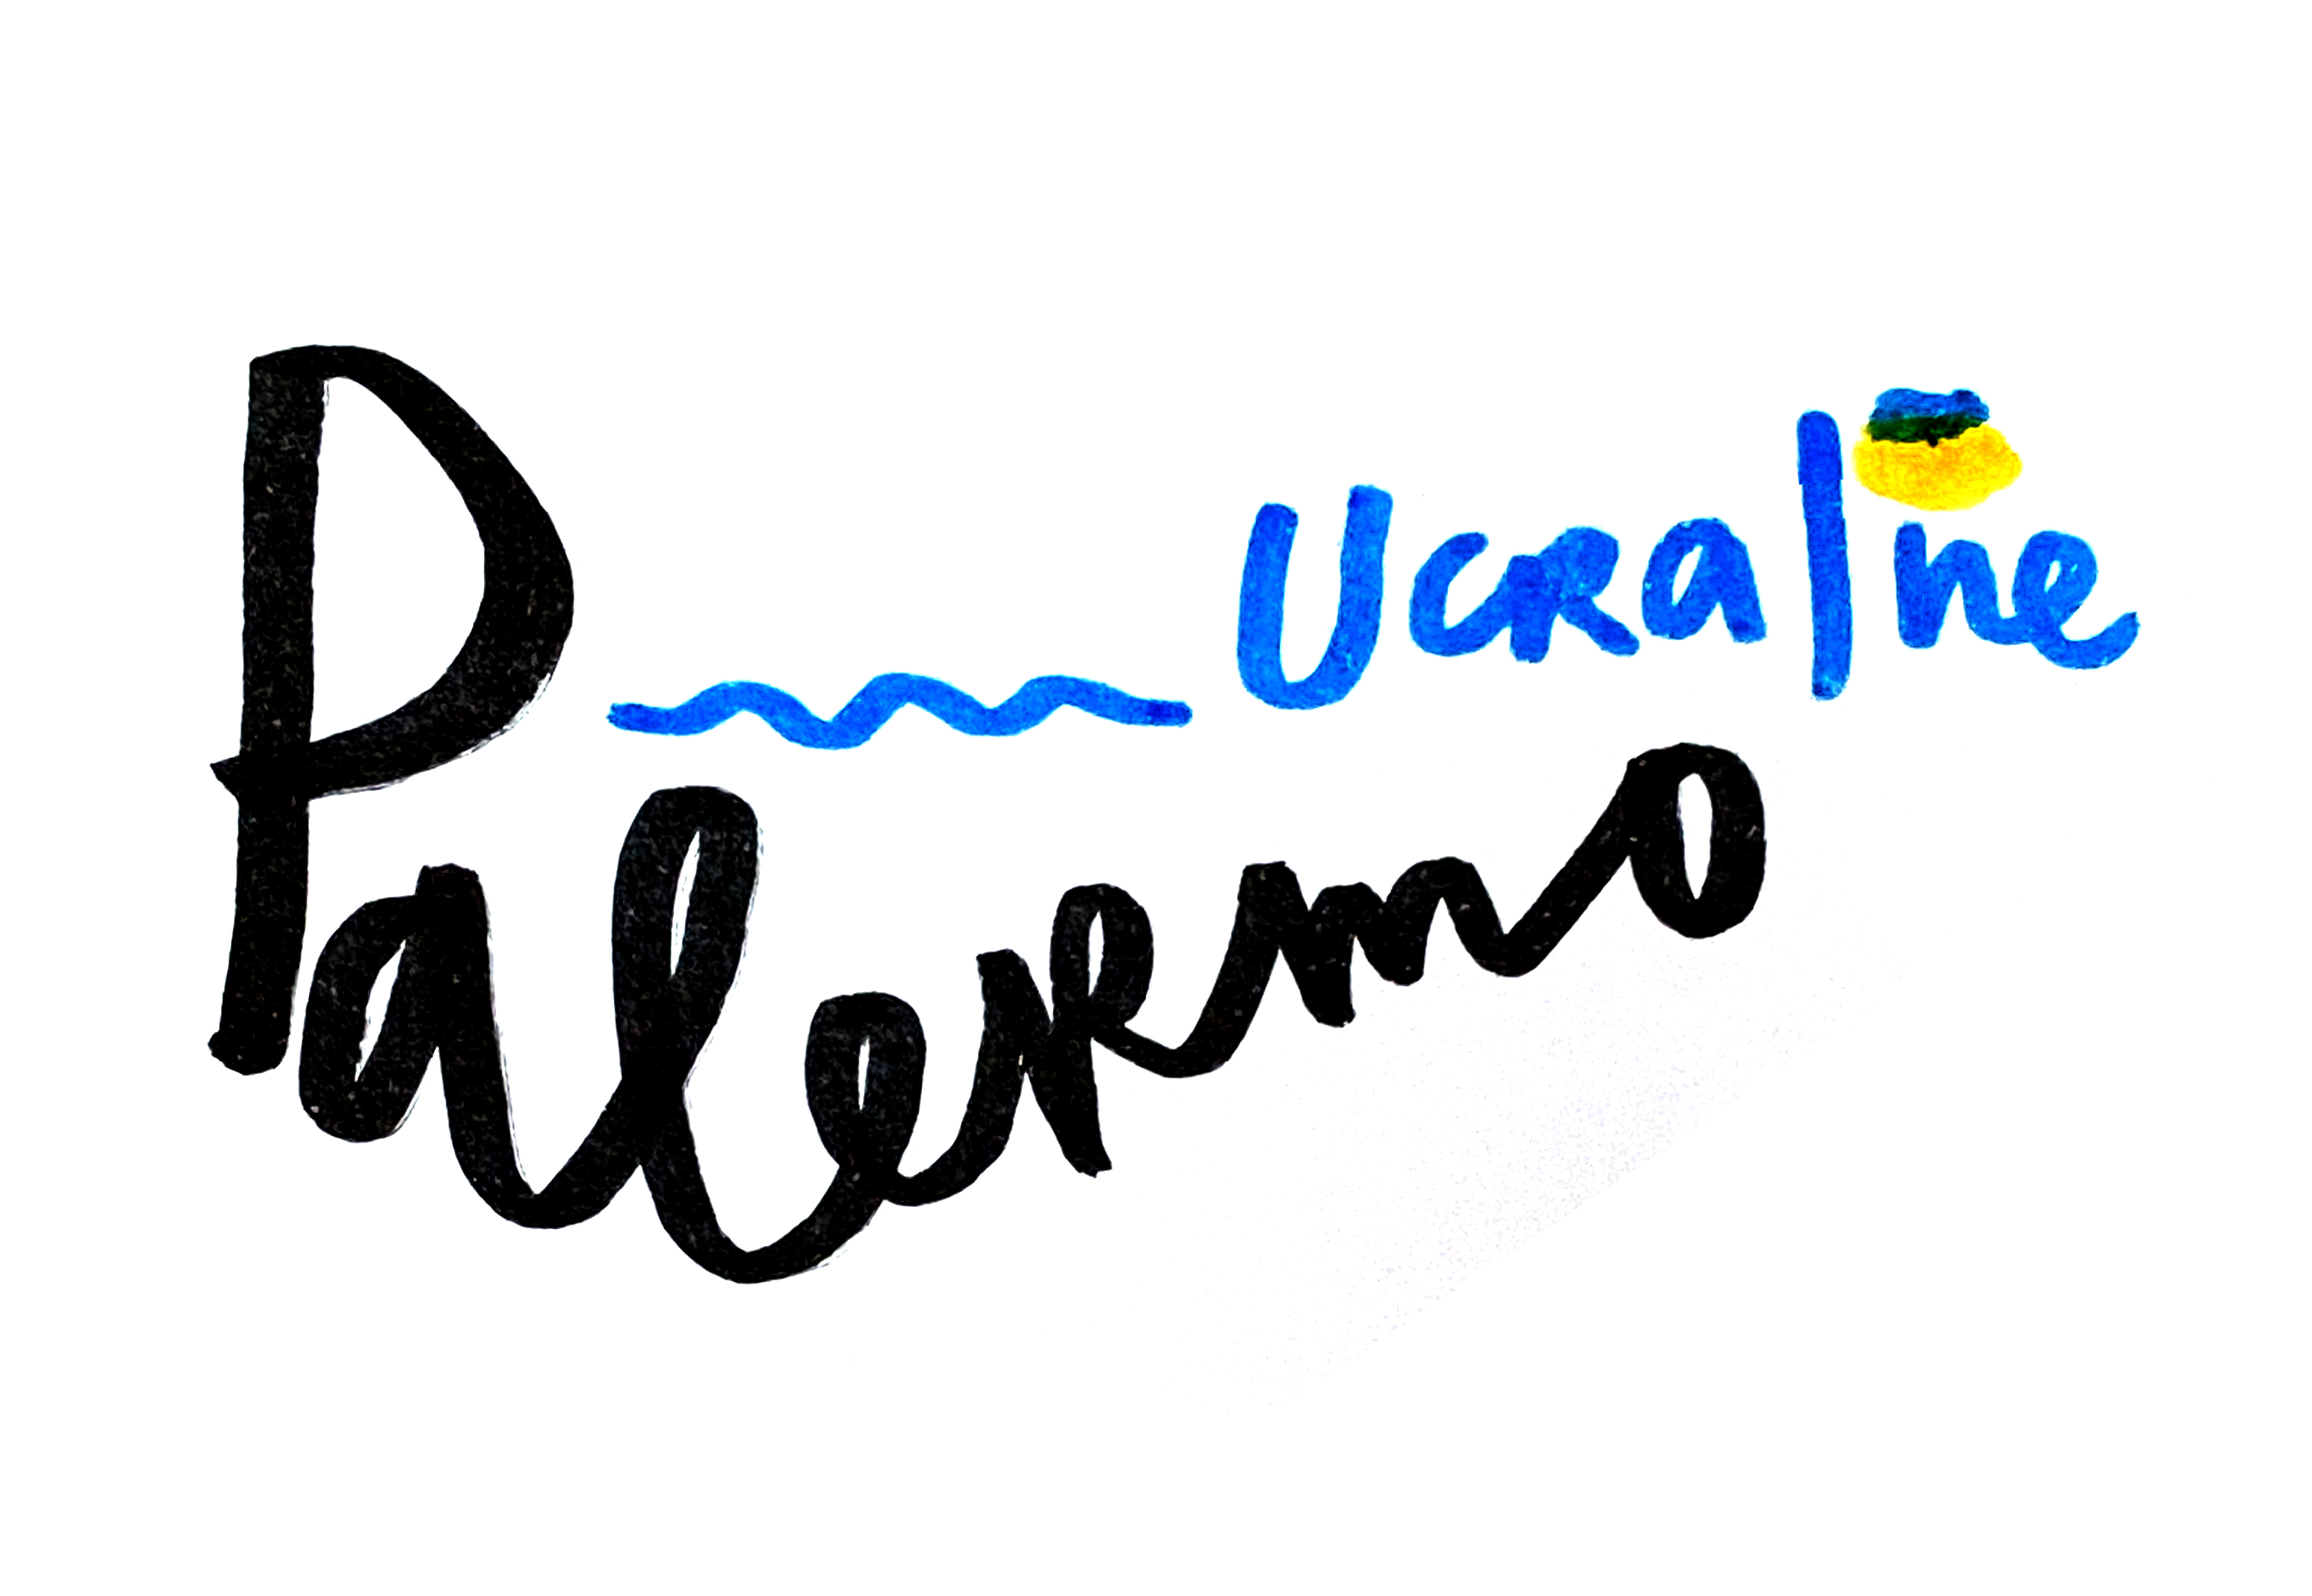 Festival della cultura Ucraina a Palermo